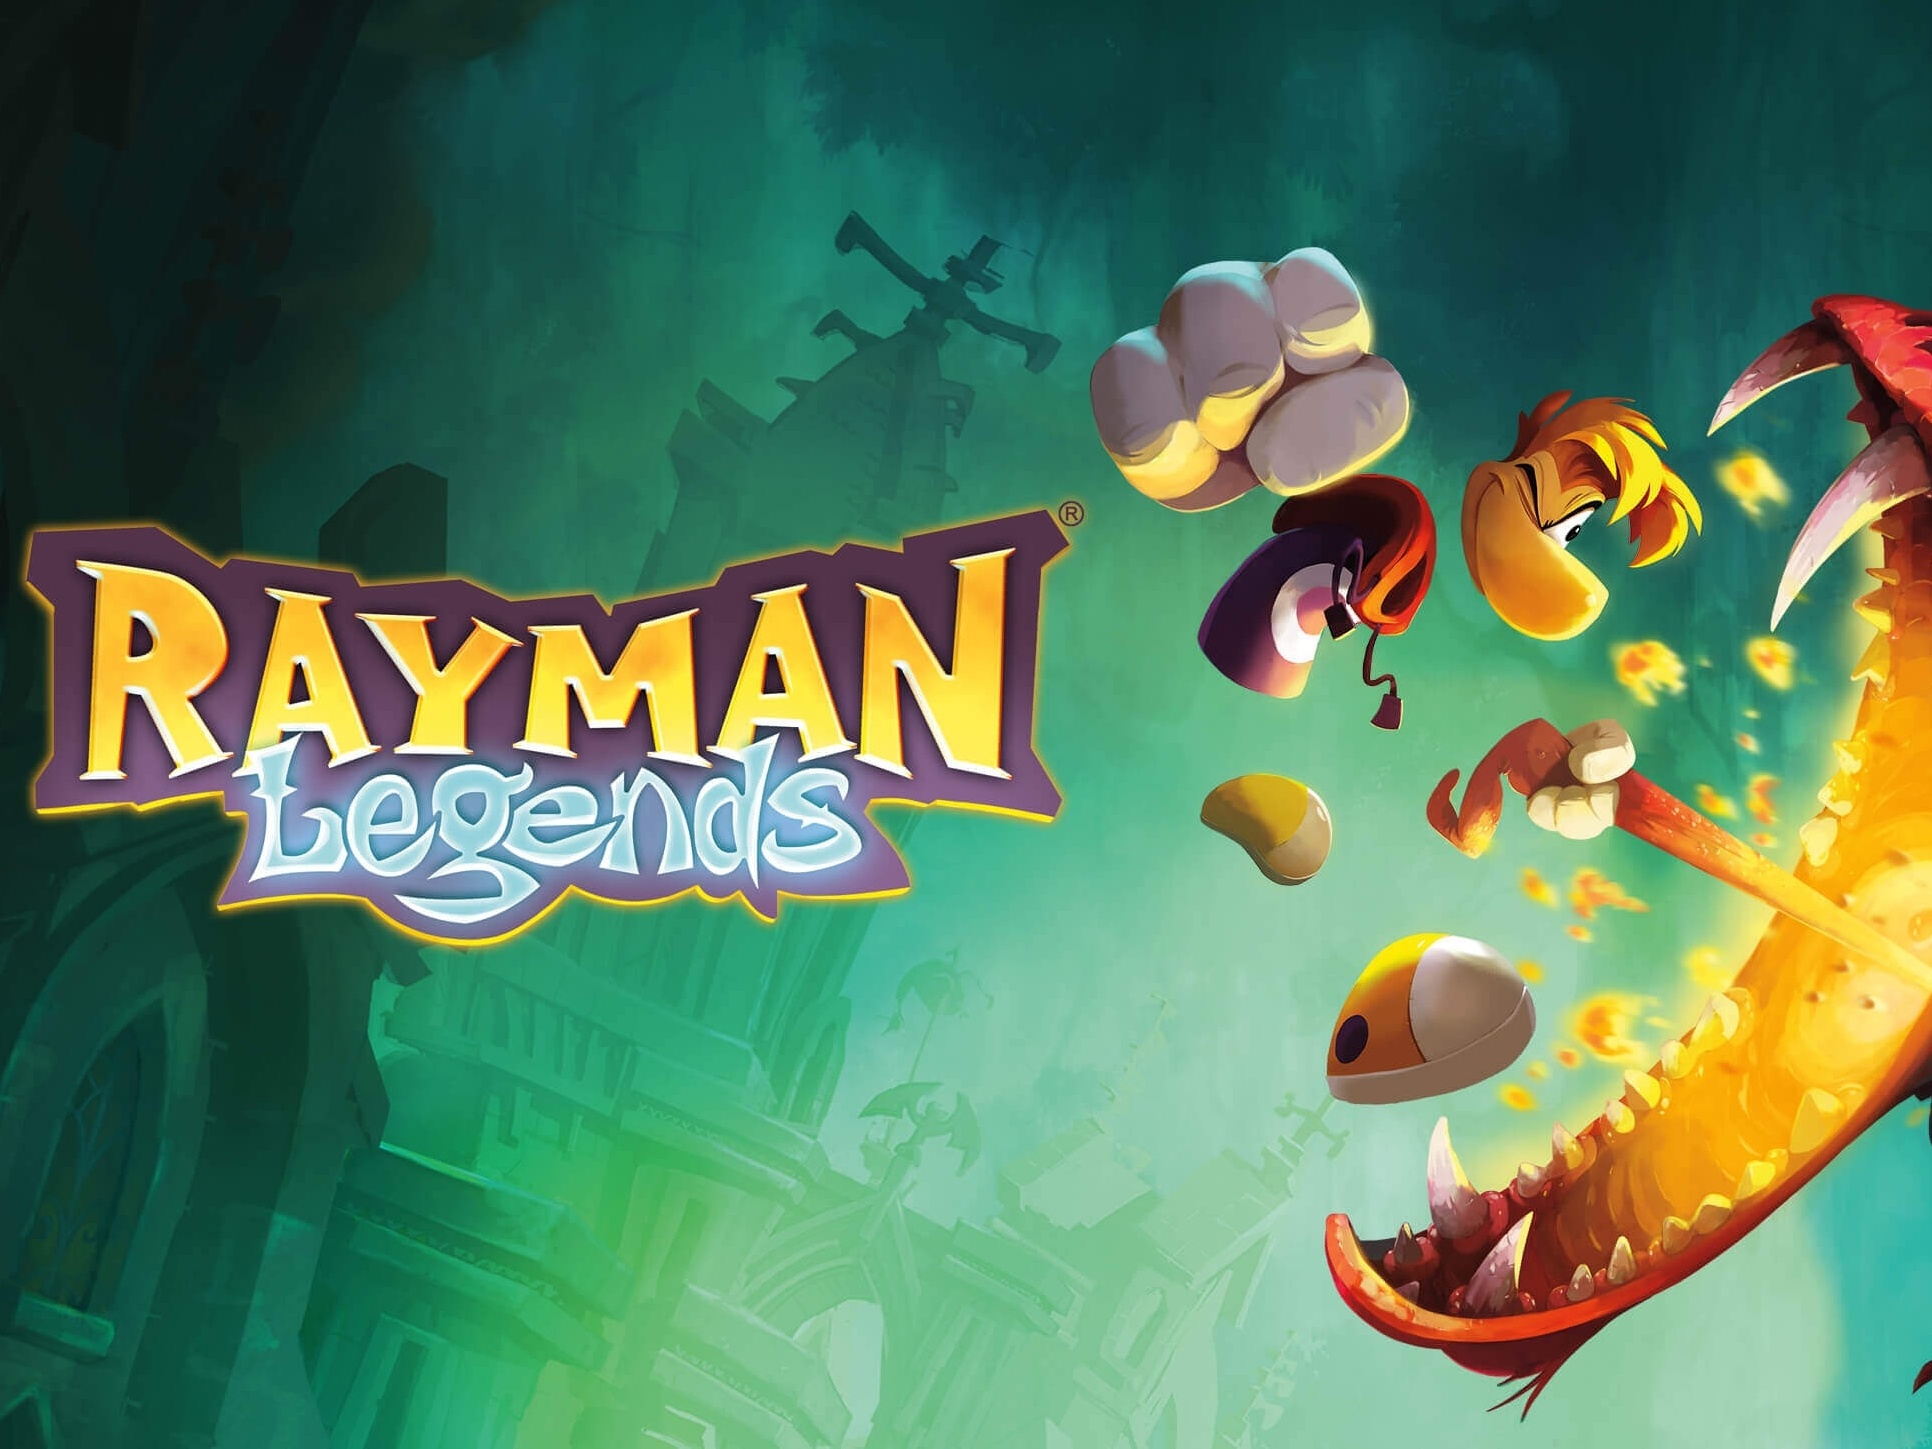 Análise: Rayman Legends